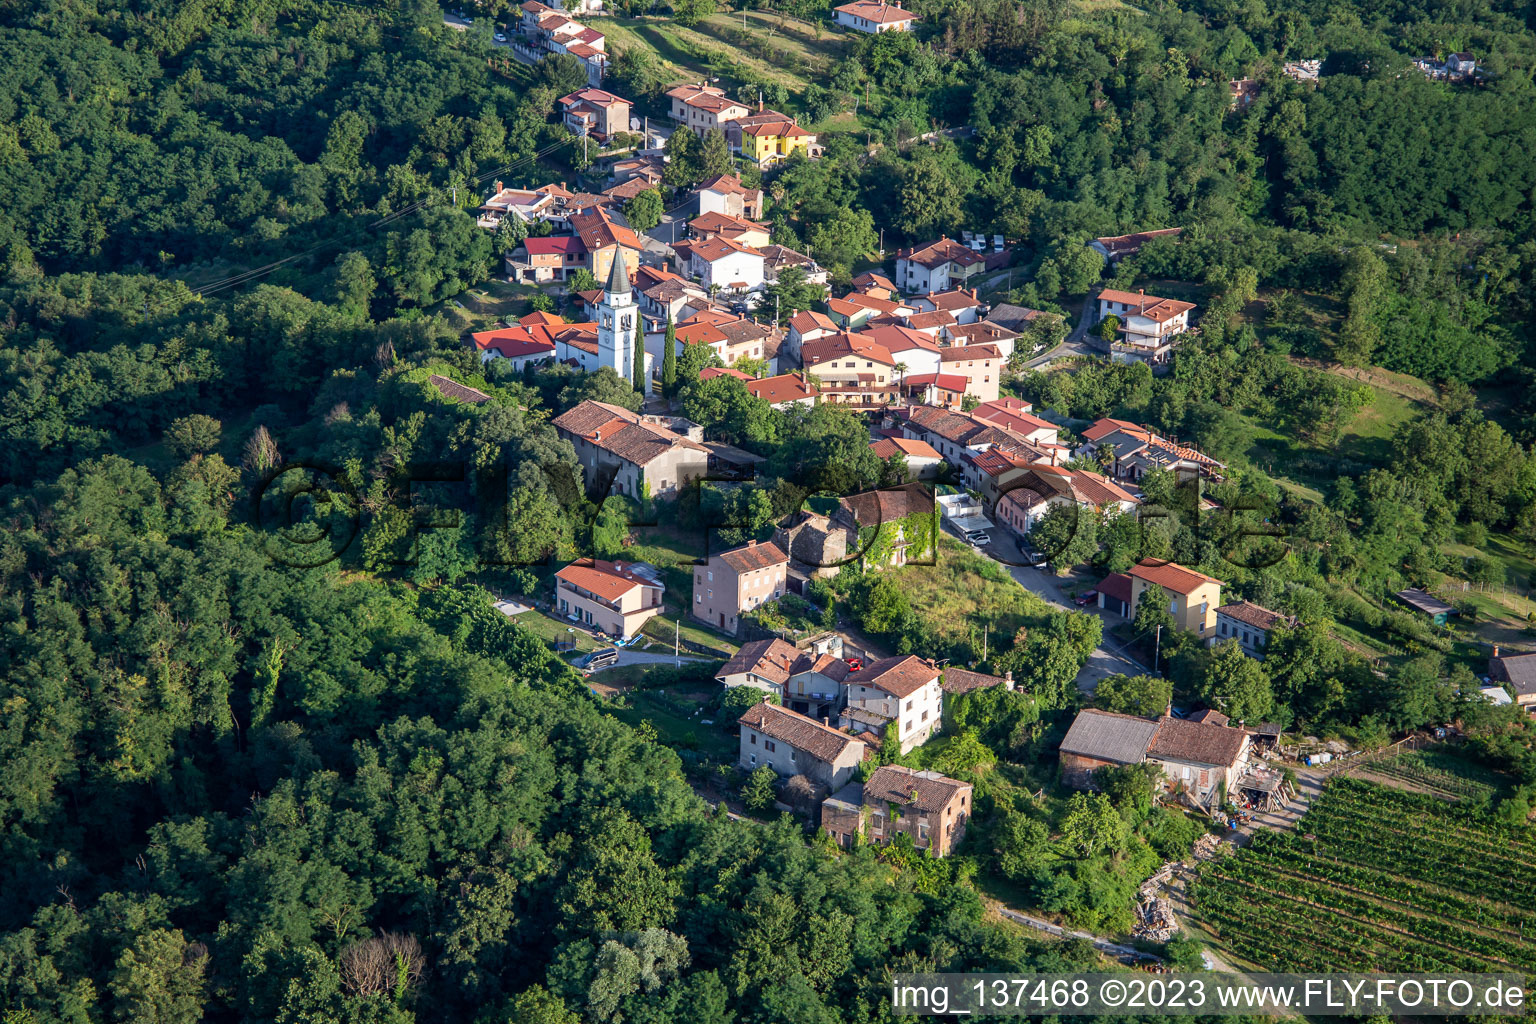 Luftbild von Hügeldorf zwischen Reben und Wald im Ortsteil Gradišče nad Prvačino in Nova Gorica, Slowenien